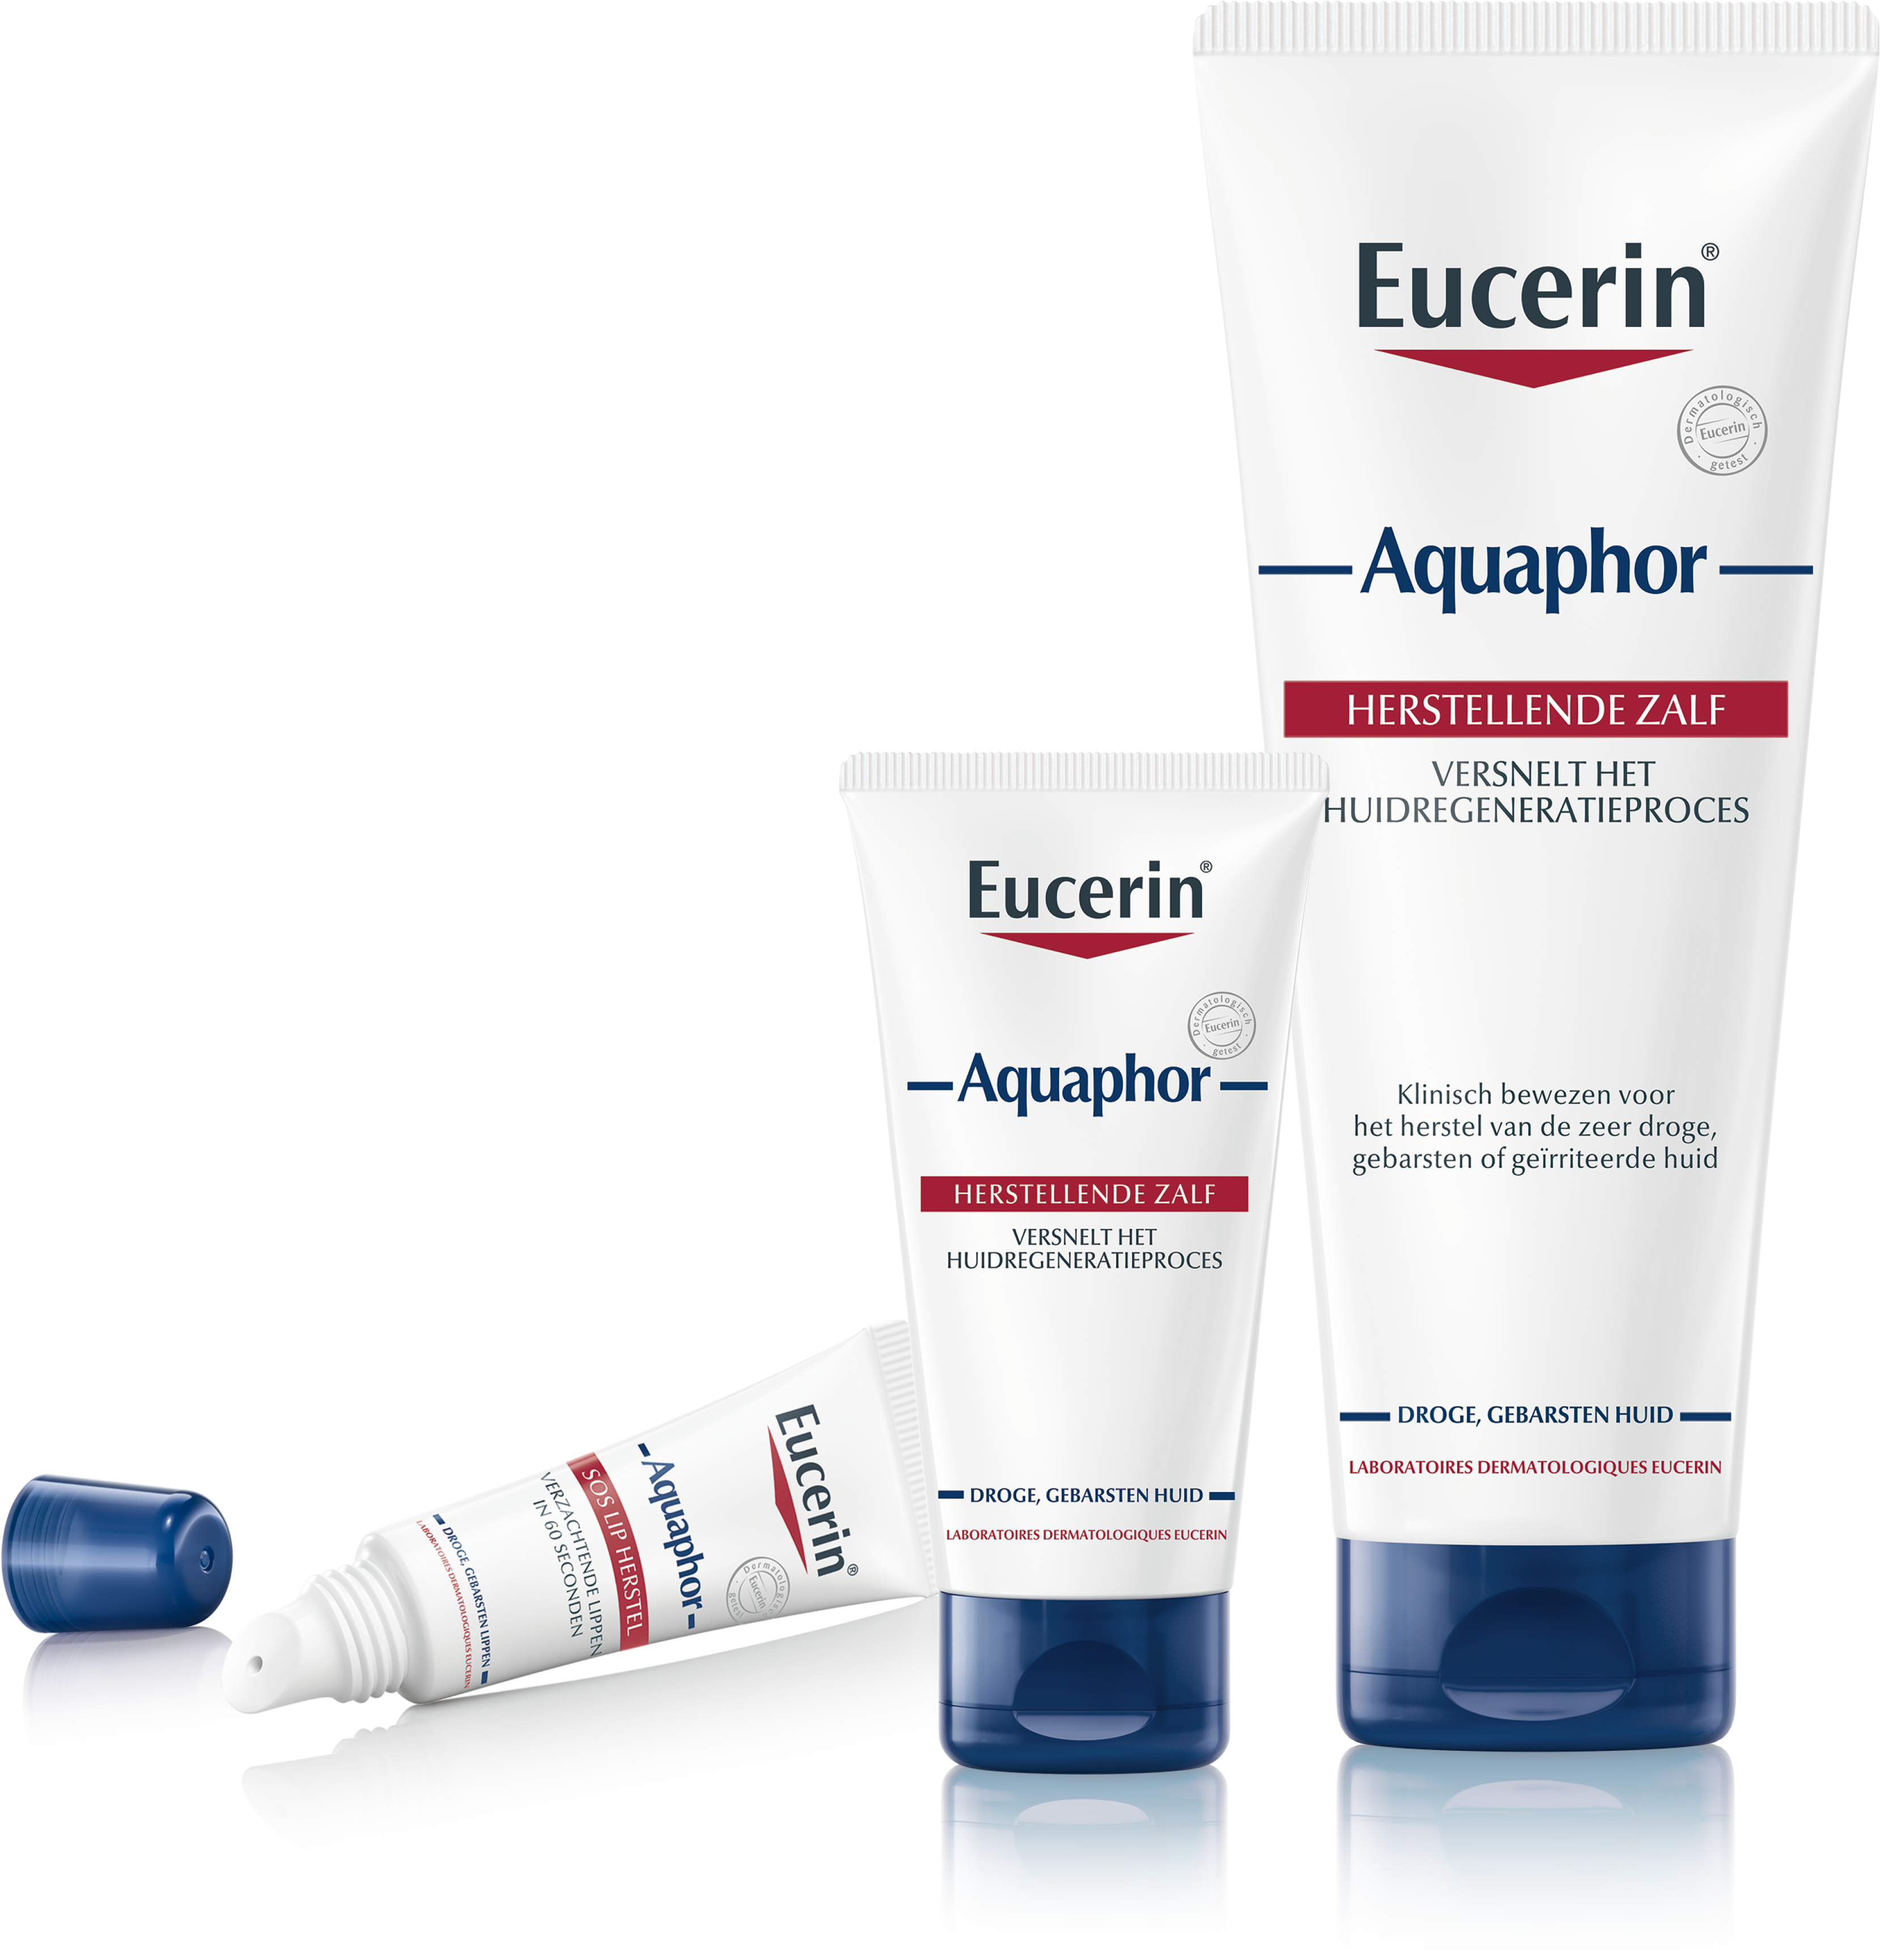 Verzorging na een laserbehandeling: Eucerin Aquaphor